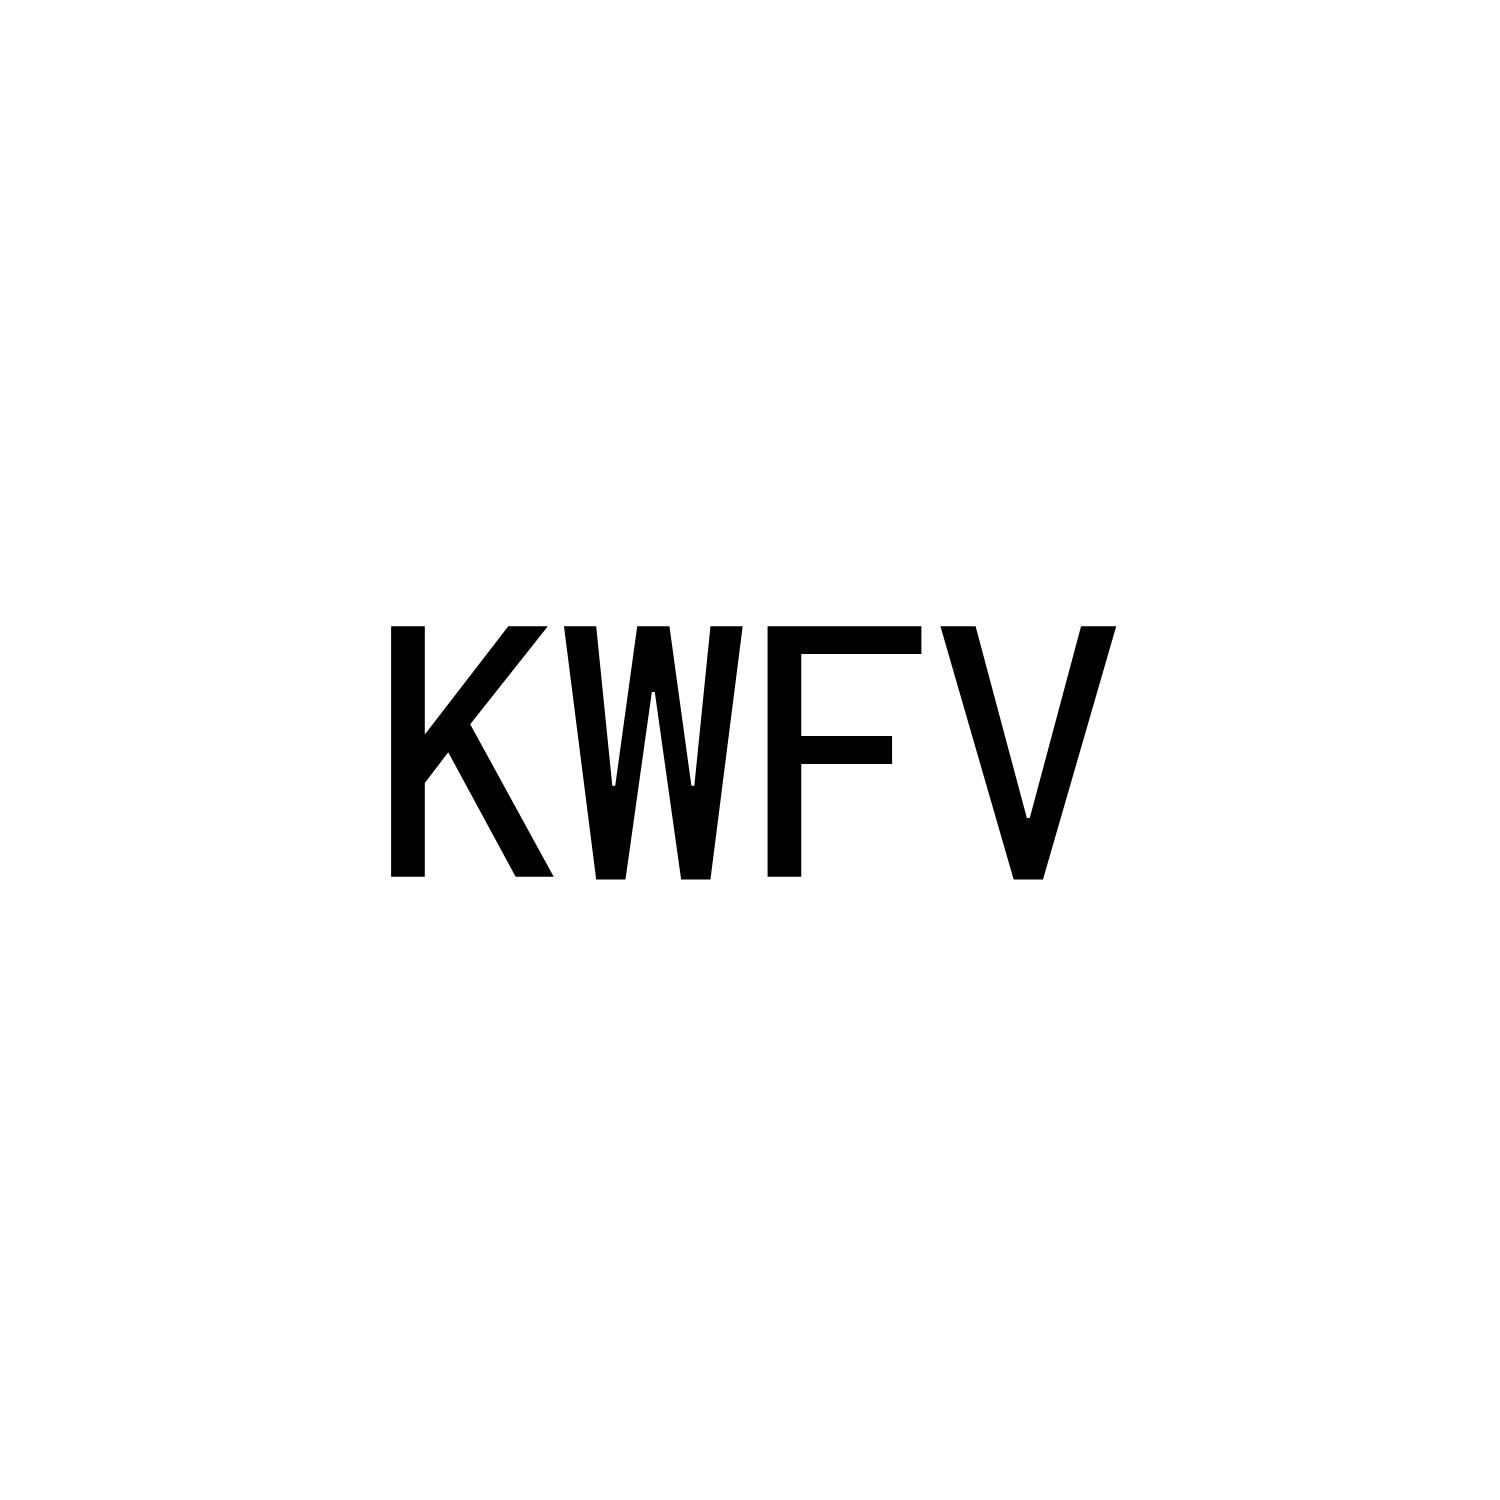 KWFV